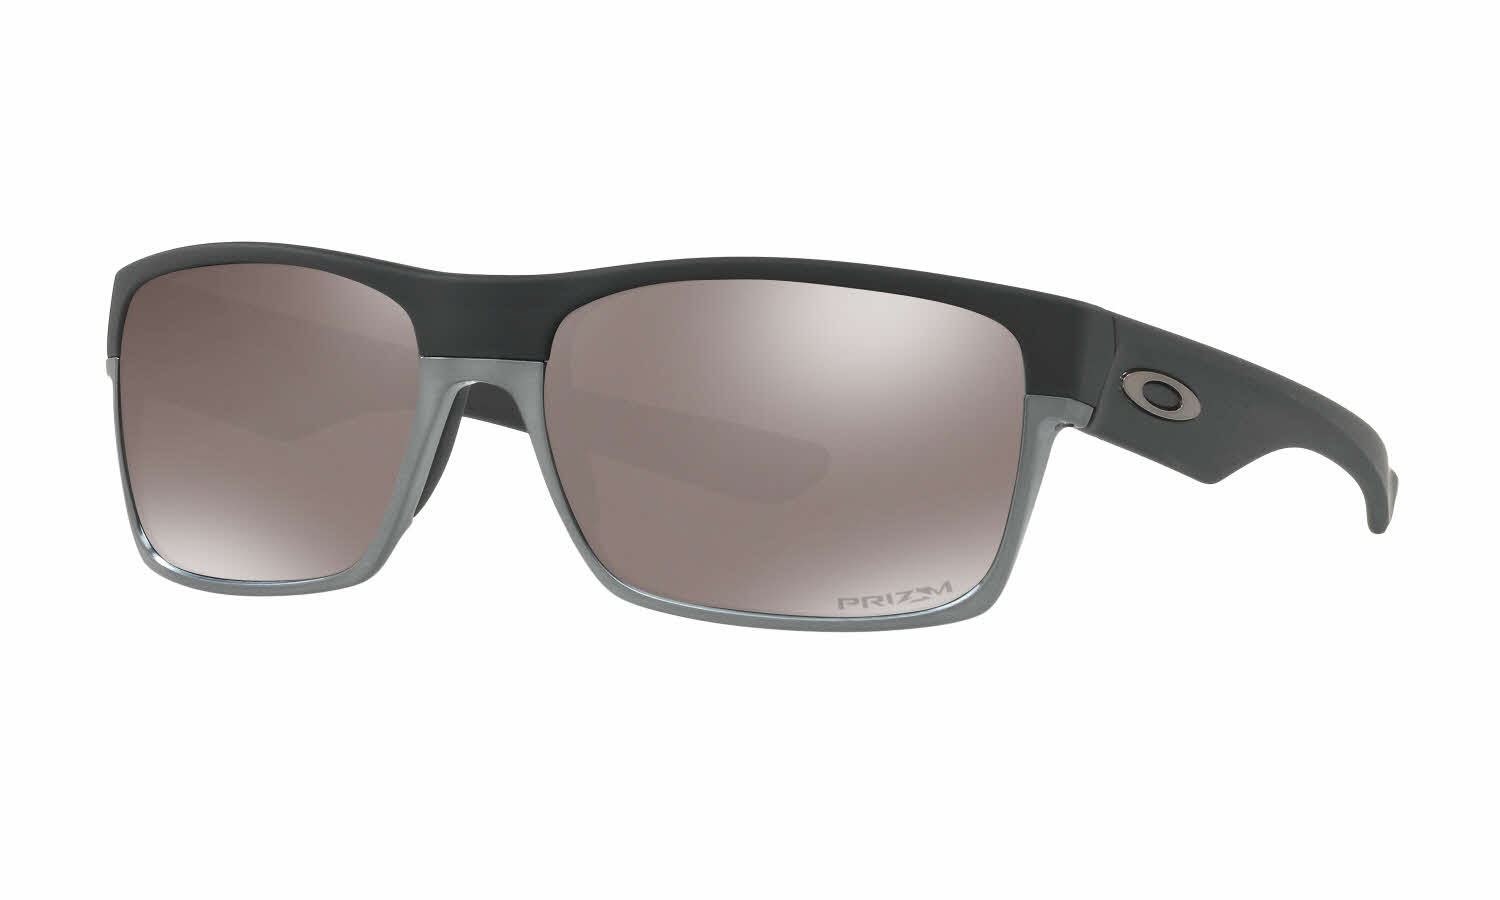 Oakley Twoface Sunglasses